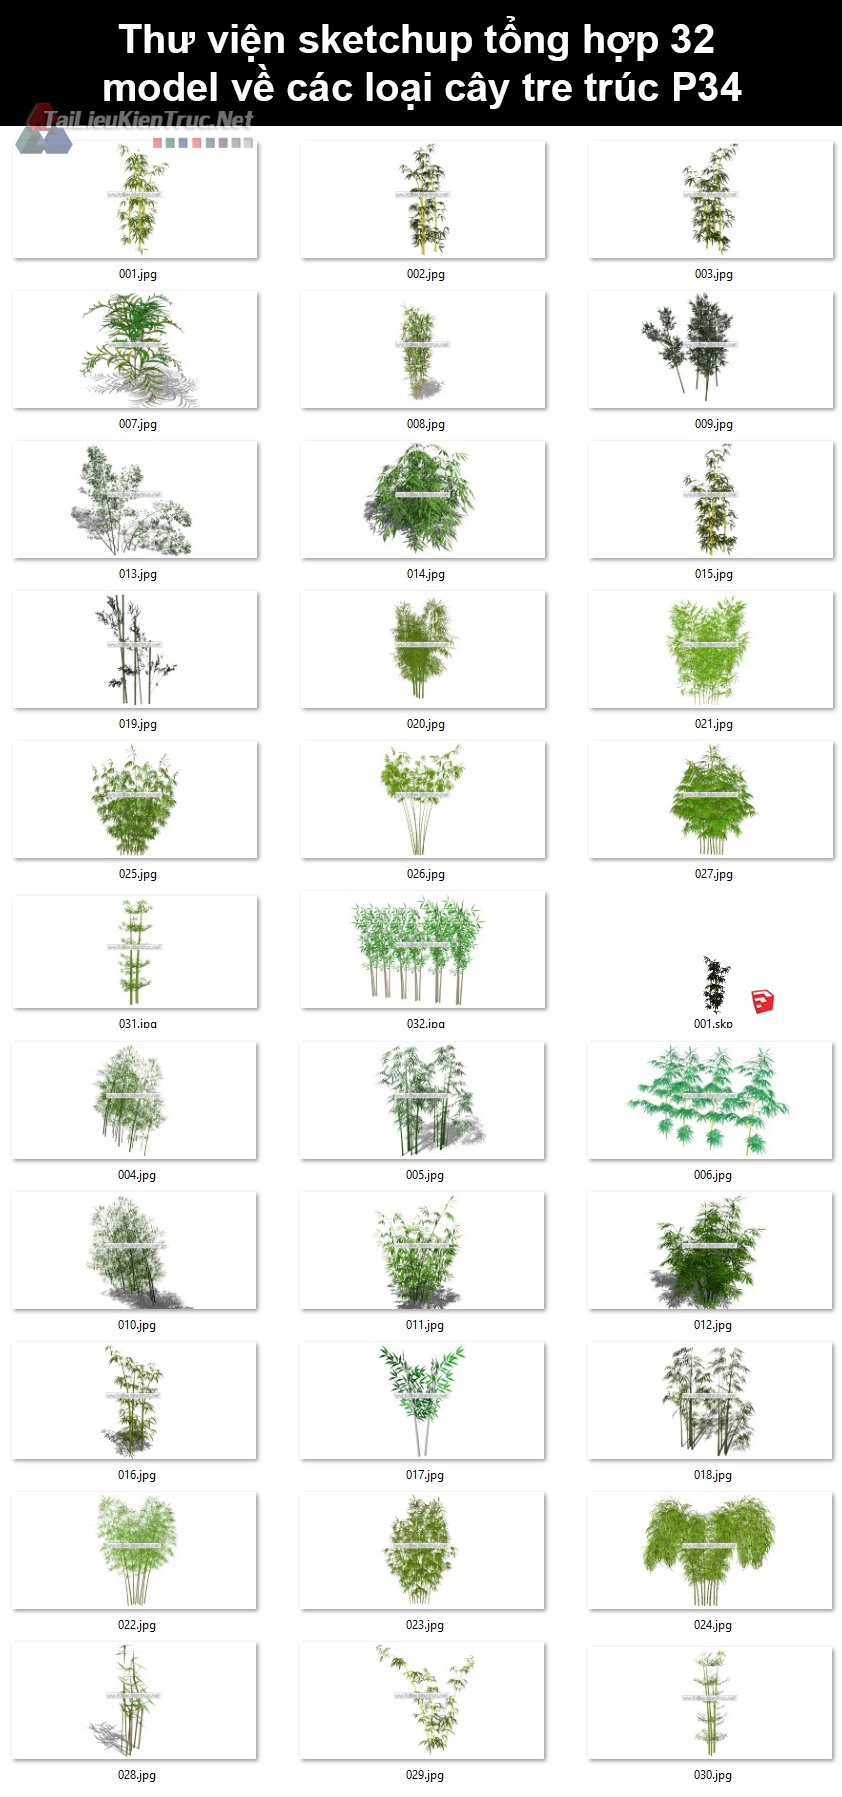 Thư viện Sketchup tổng hợp 32 Model về các loại cây tre trúc P34